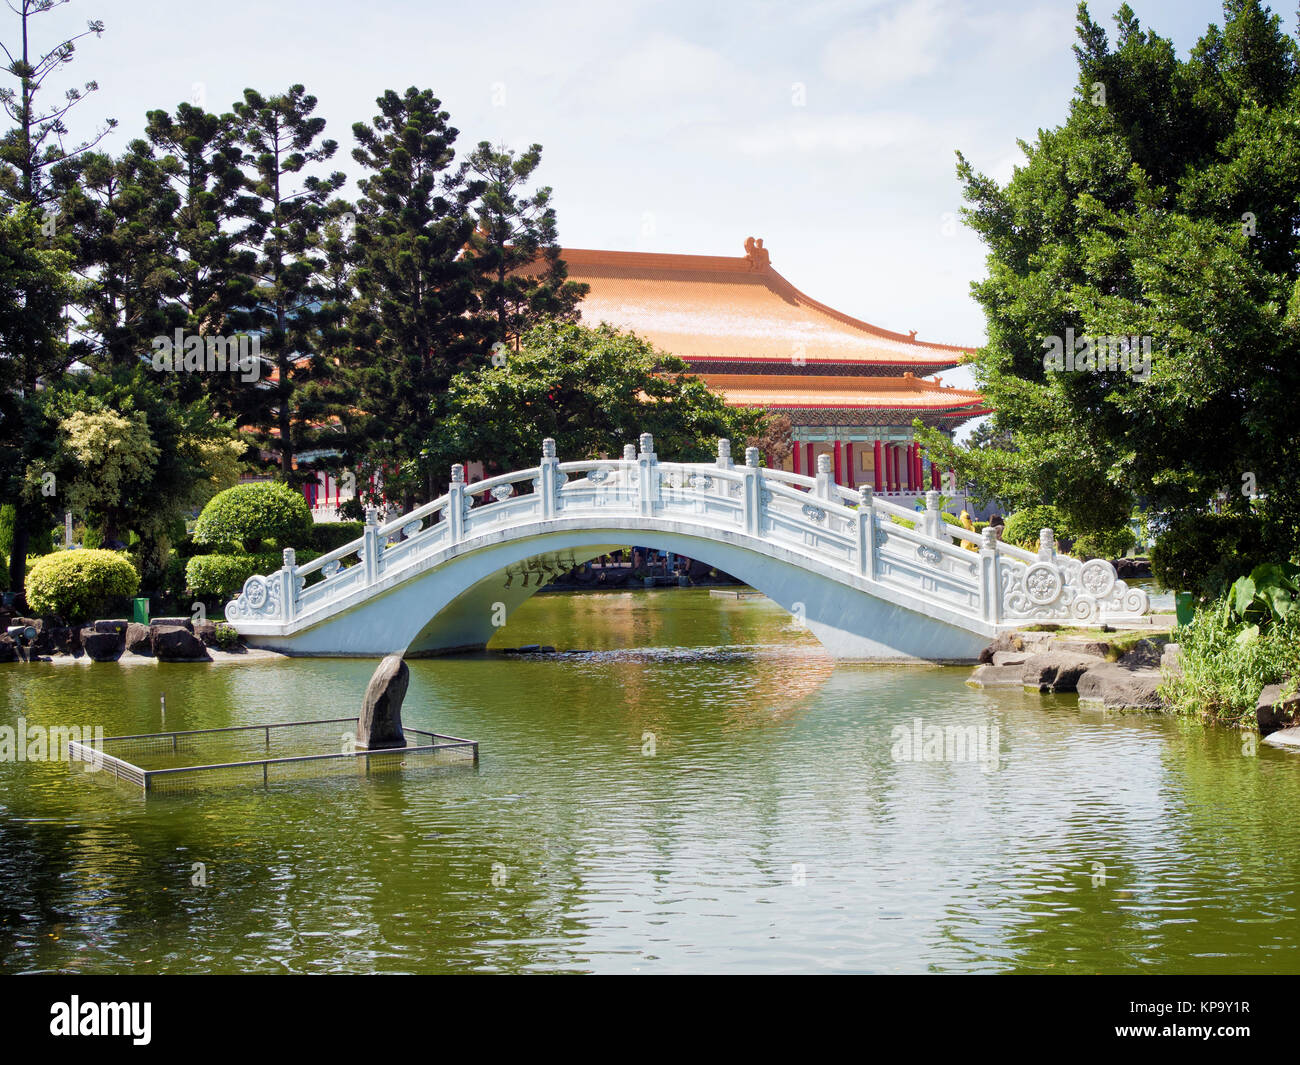 Puente de piedra blanca en un jardín de Asia Foto de stock